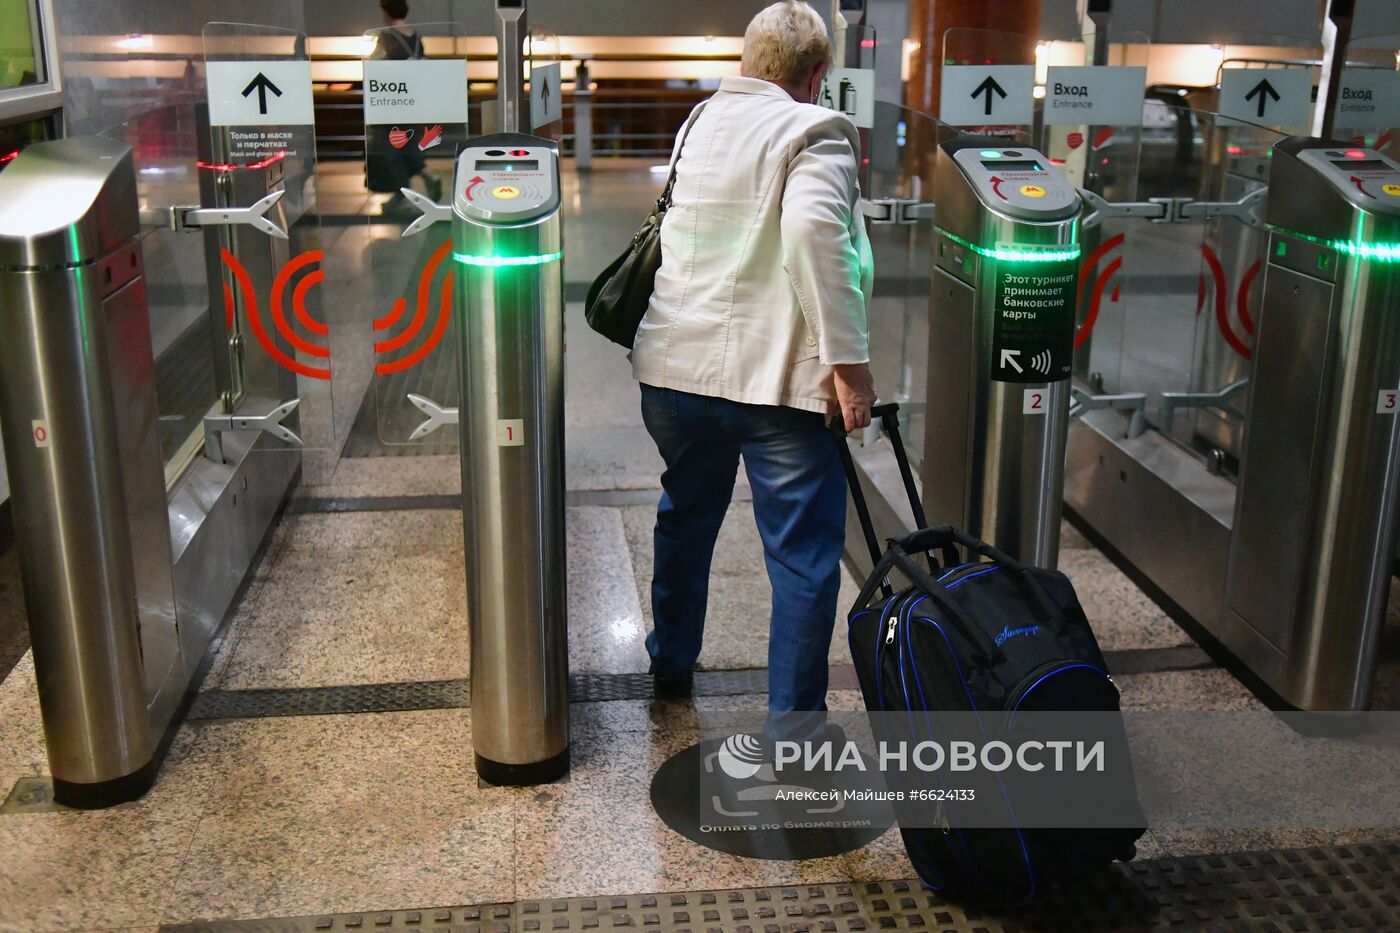 Тестирование системы Face Pay запустили на Филевской линии московского метро